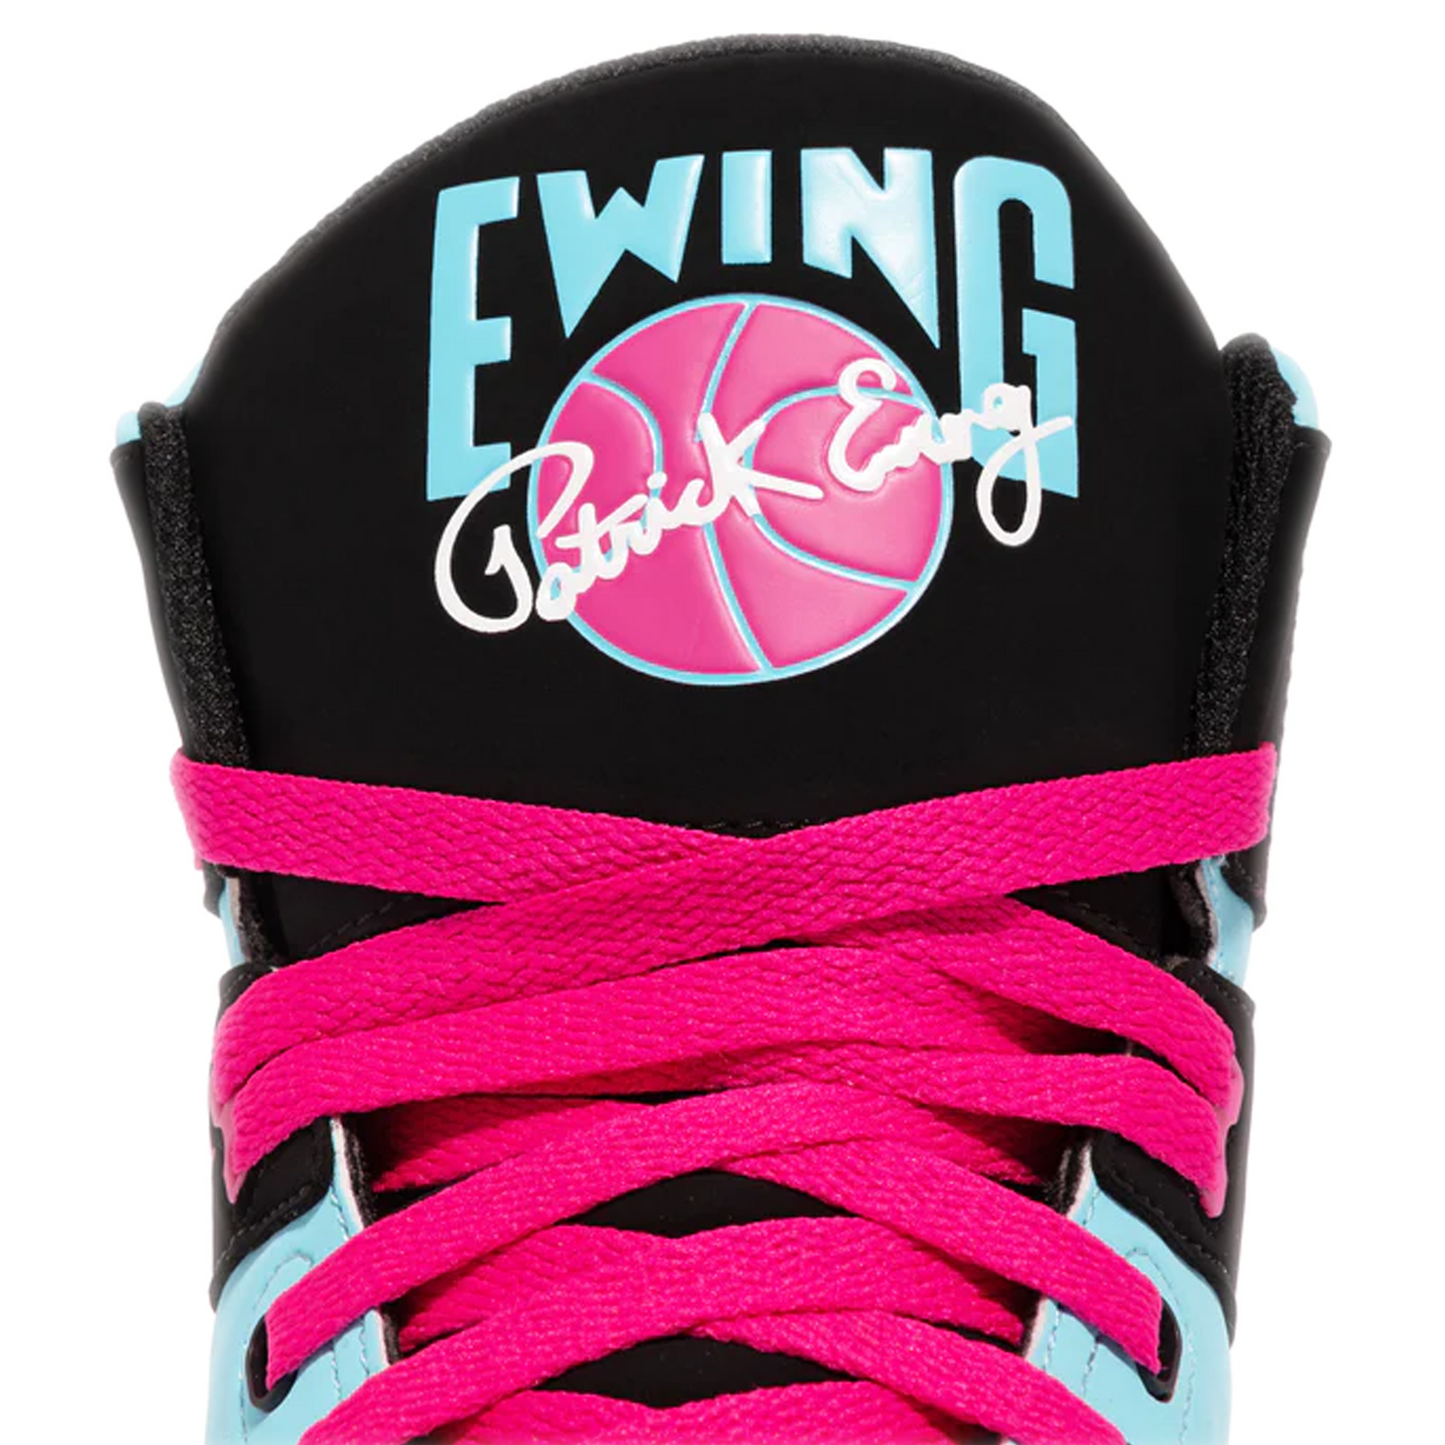 Ewing 33 HI MIAMI - Bluefish/ Black/ Pink